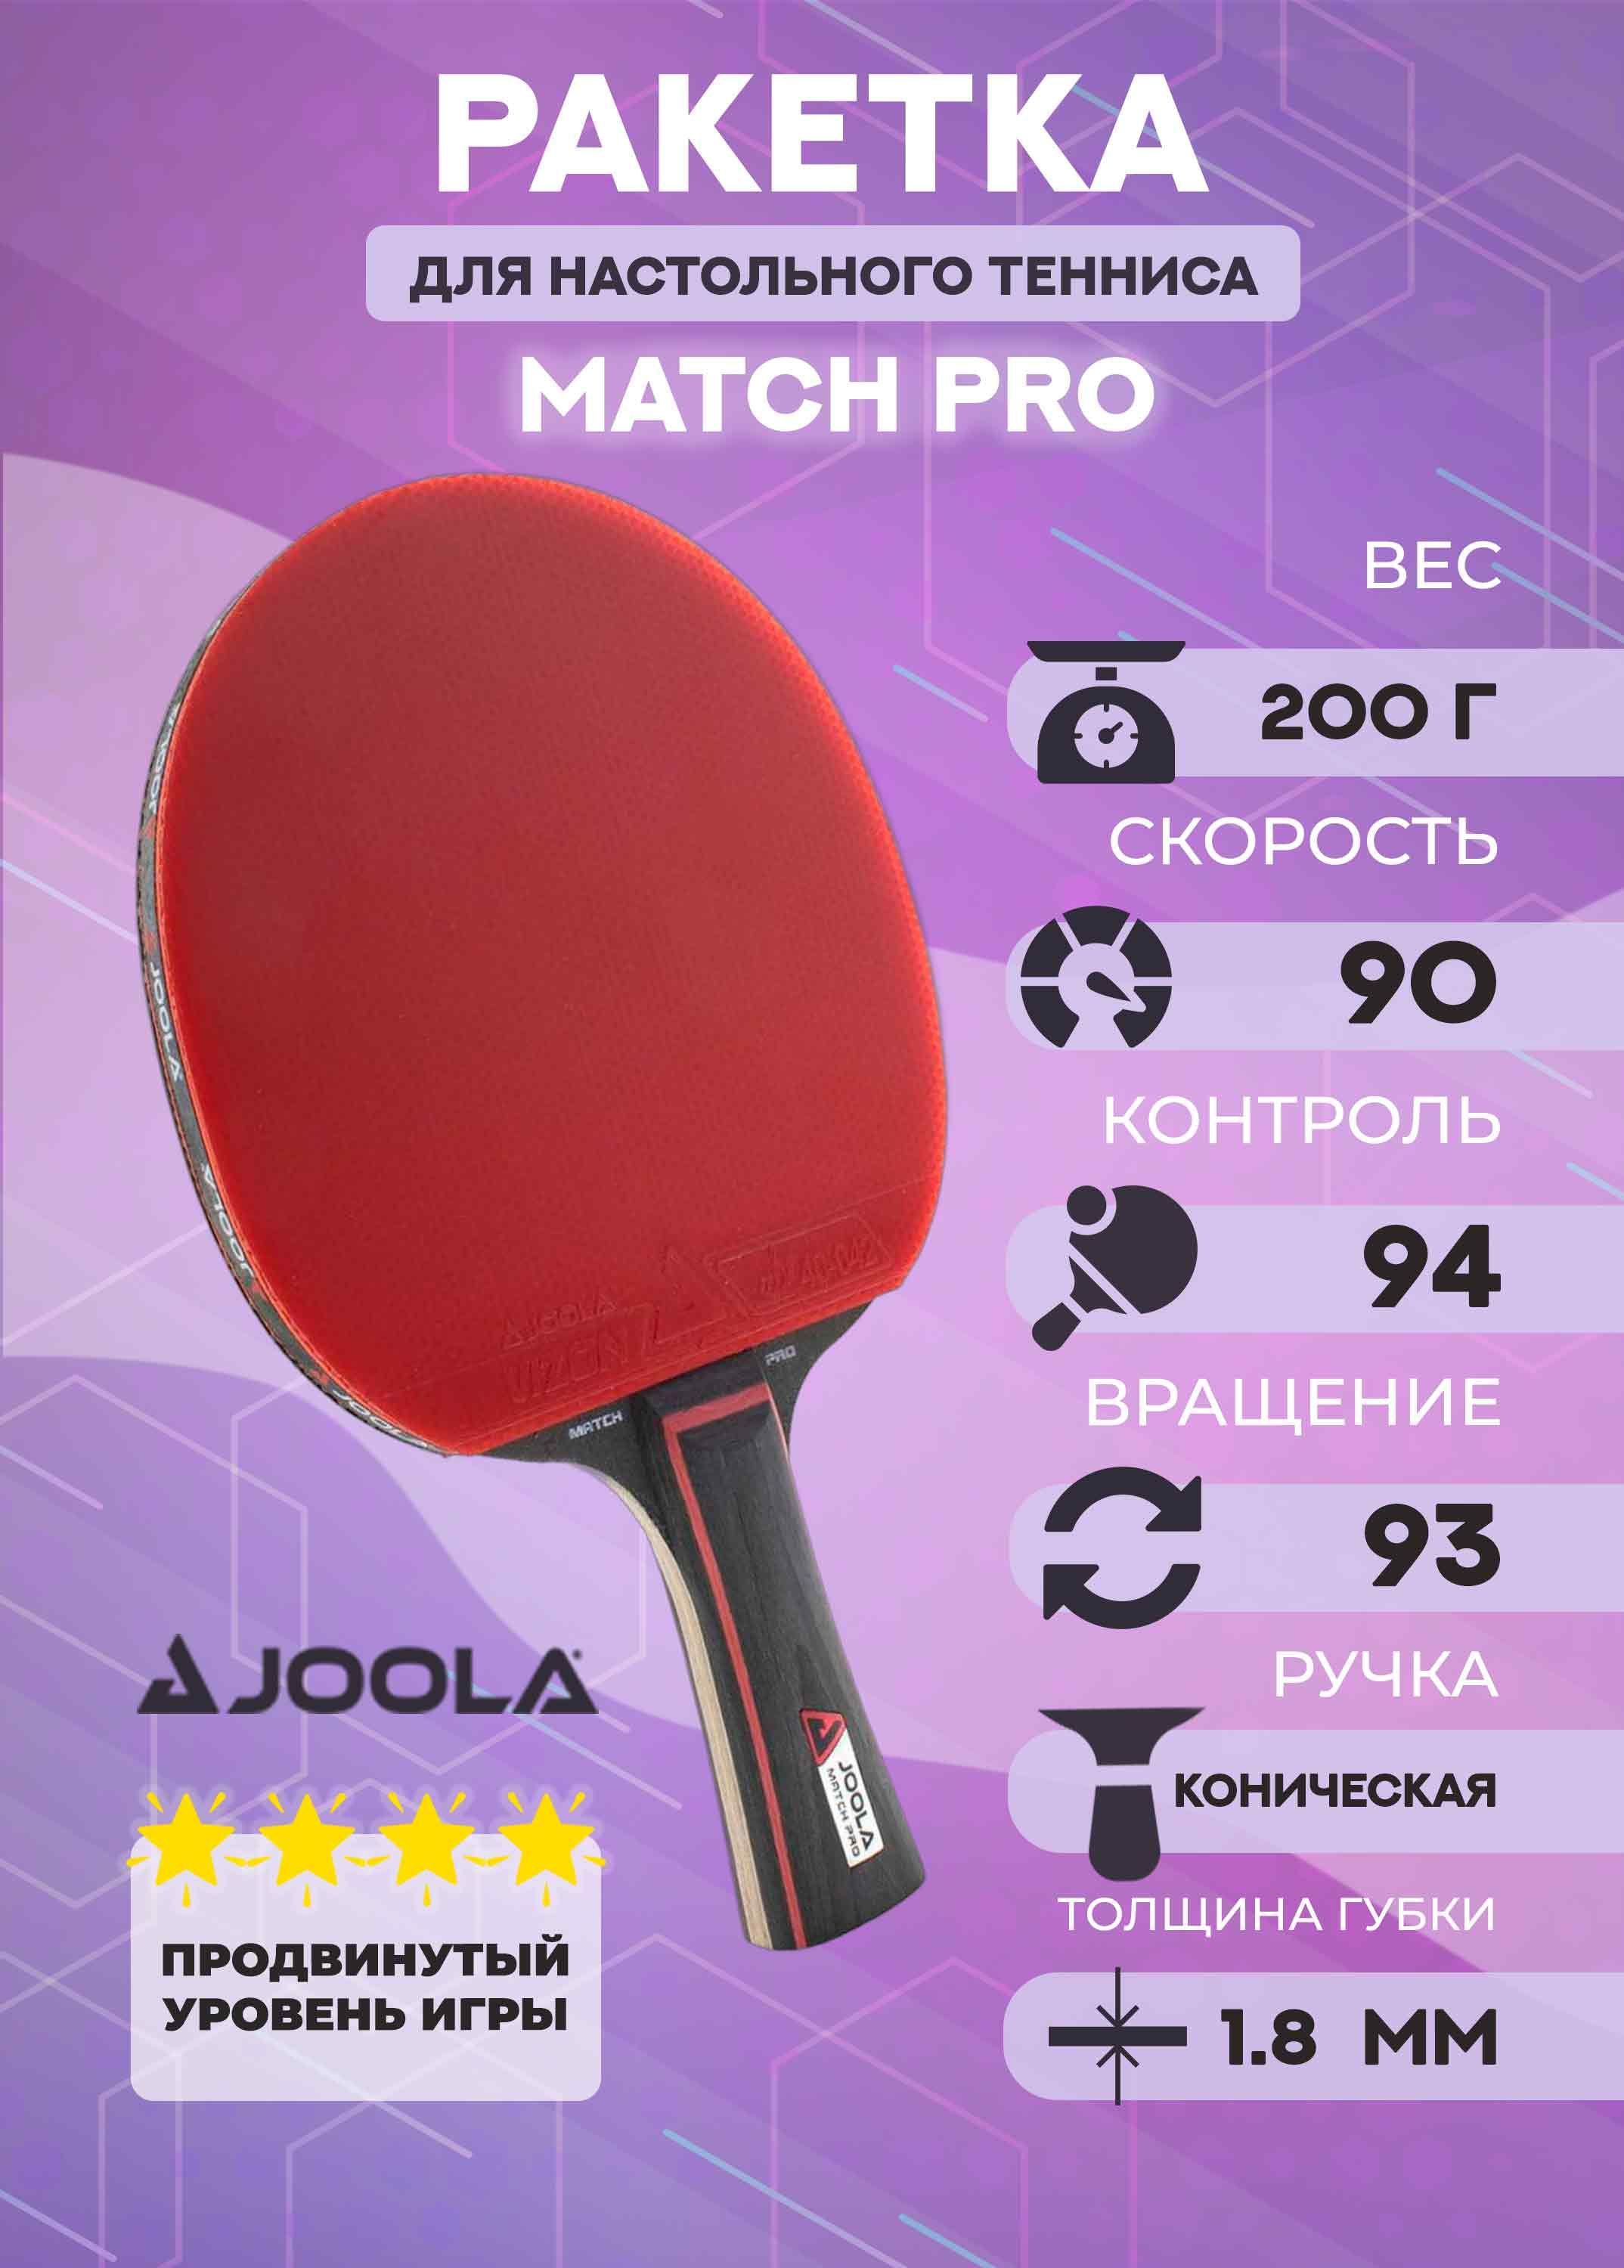 Ракетка для настольного тенниса Joola Match Pro 4* Vizion